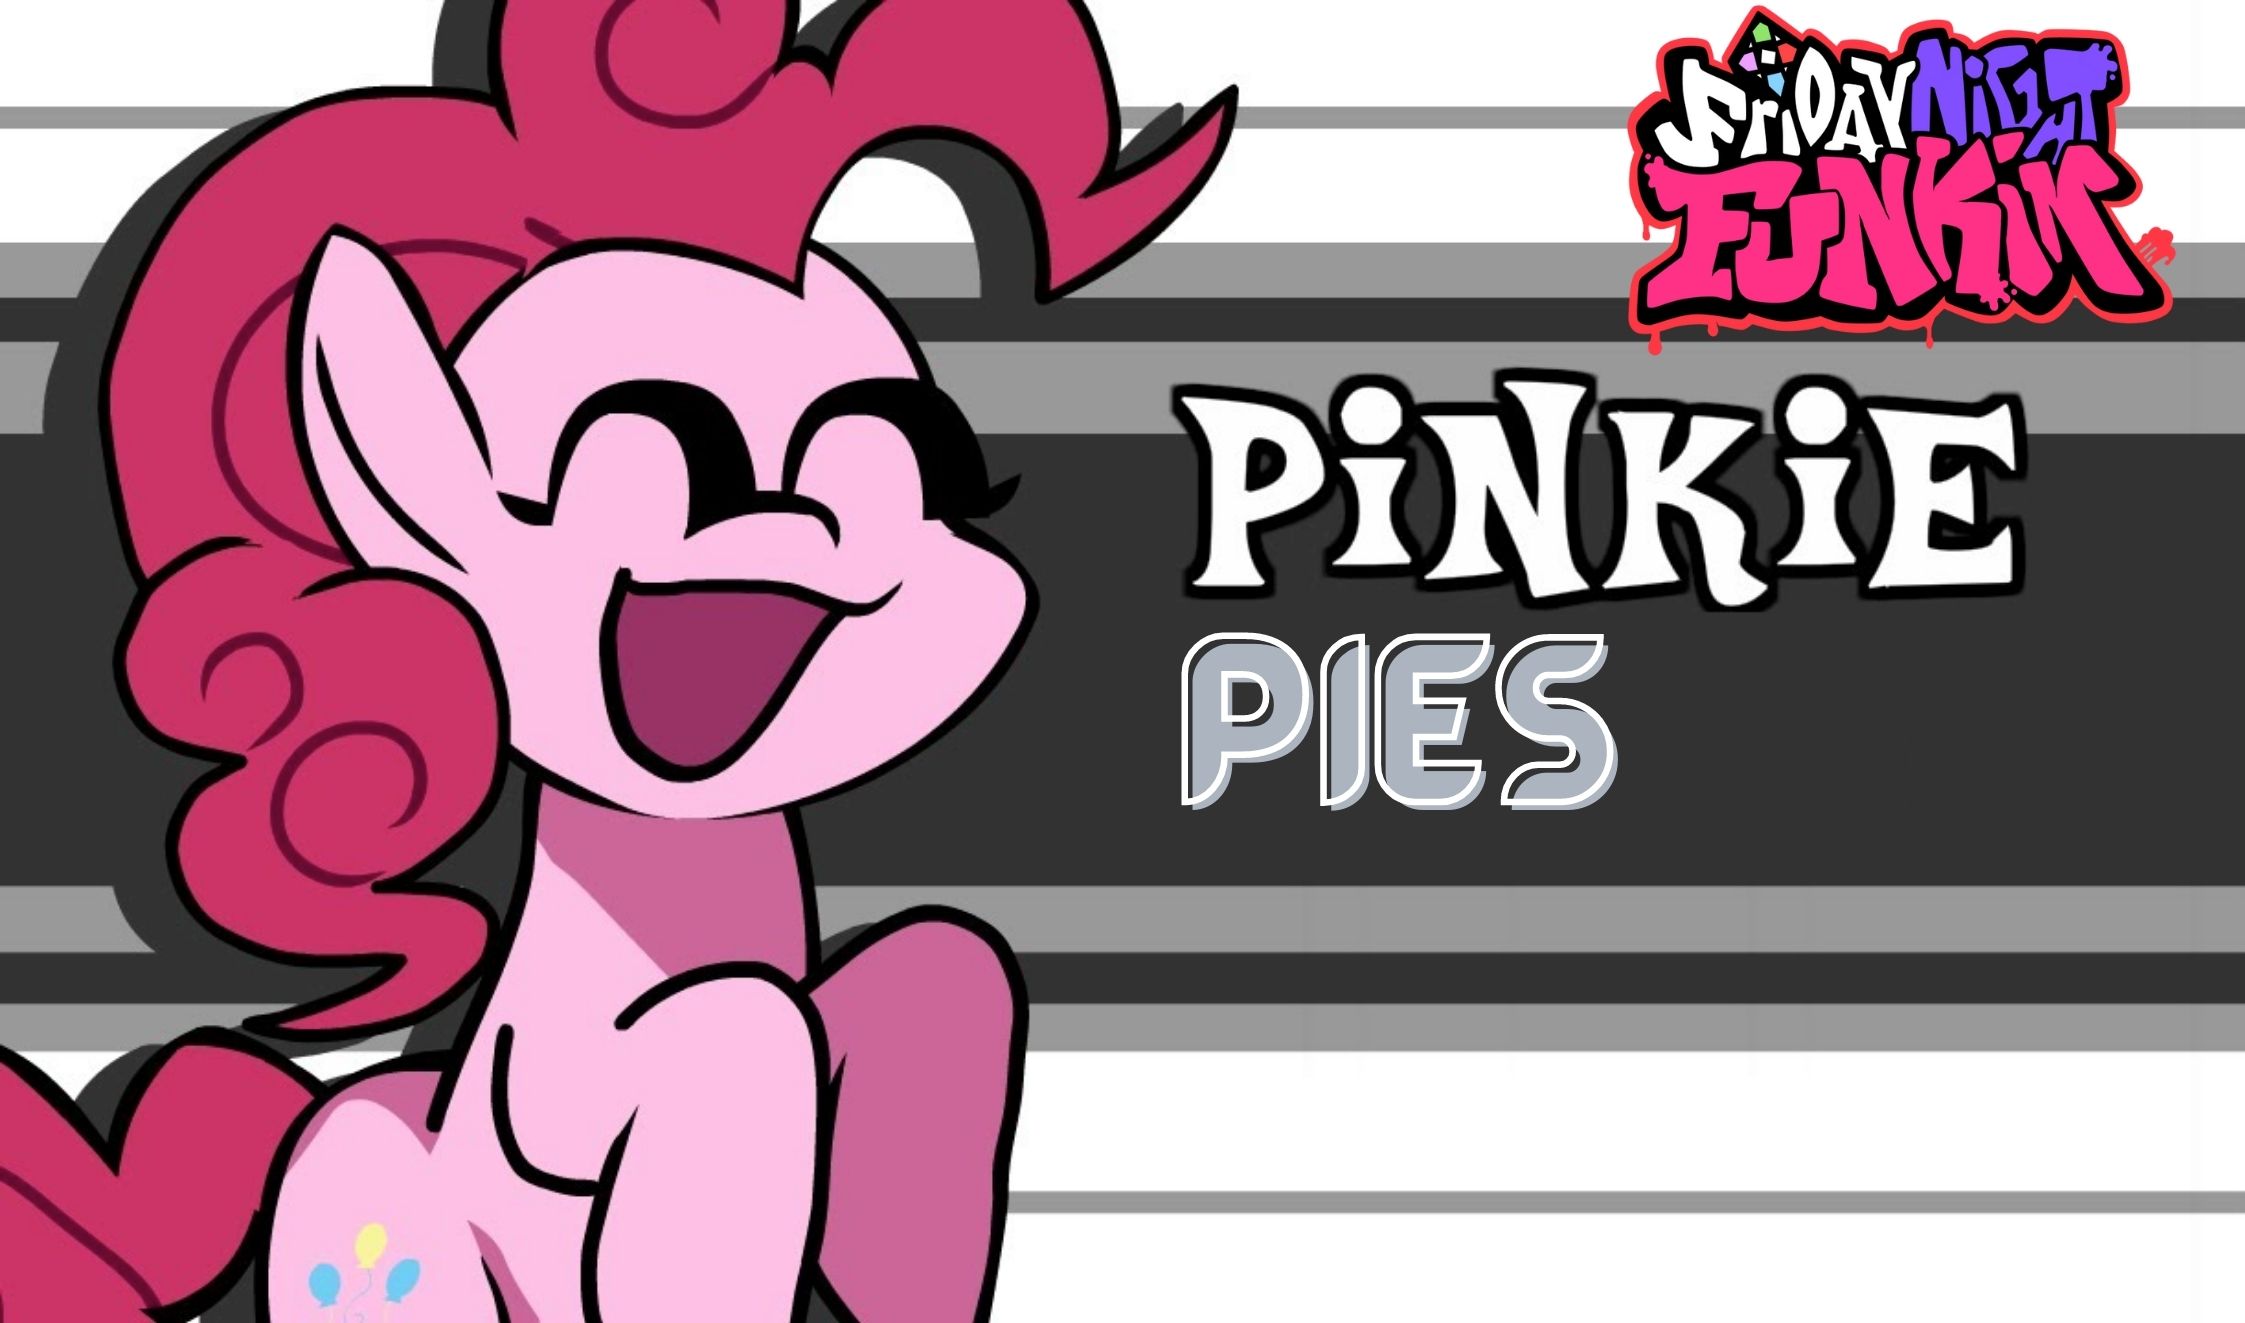 Pinky pie fnf